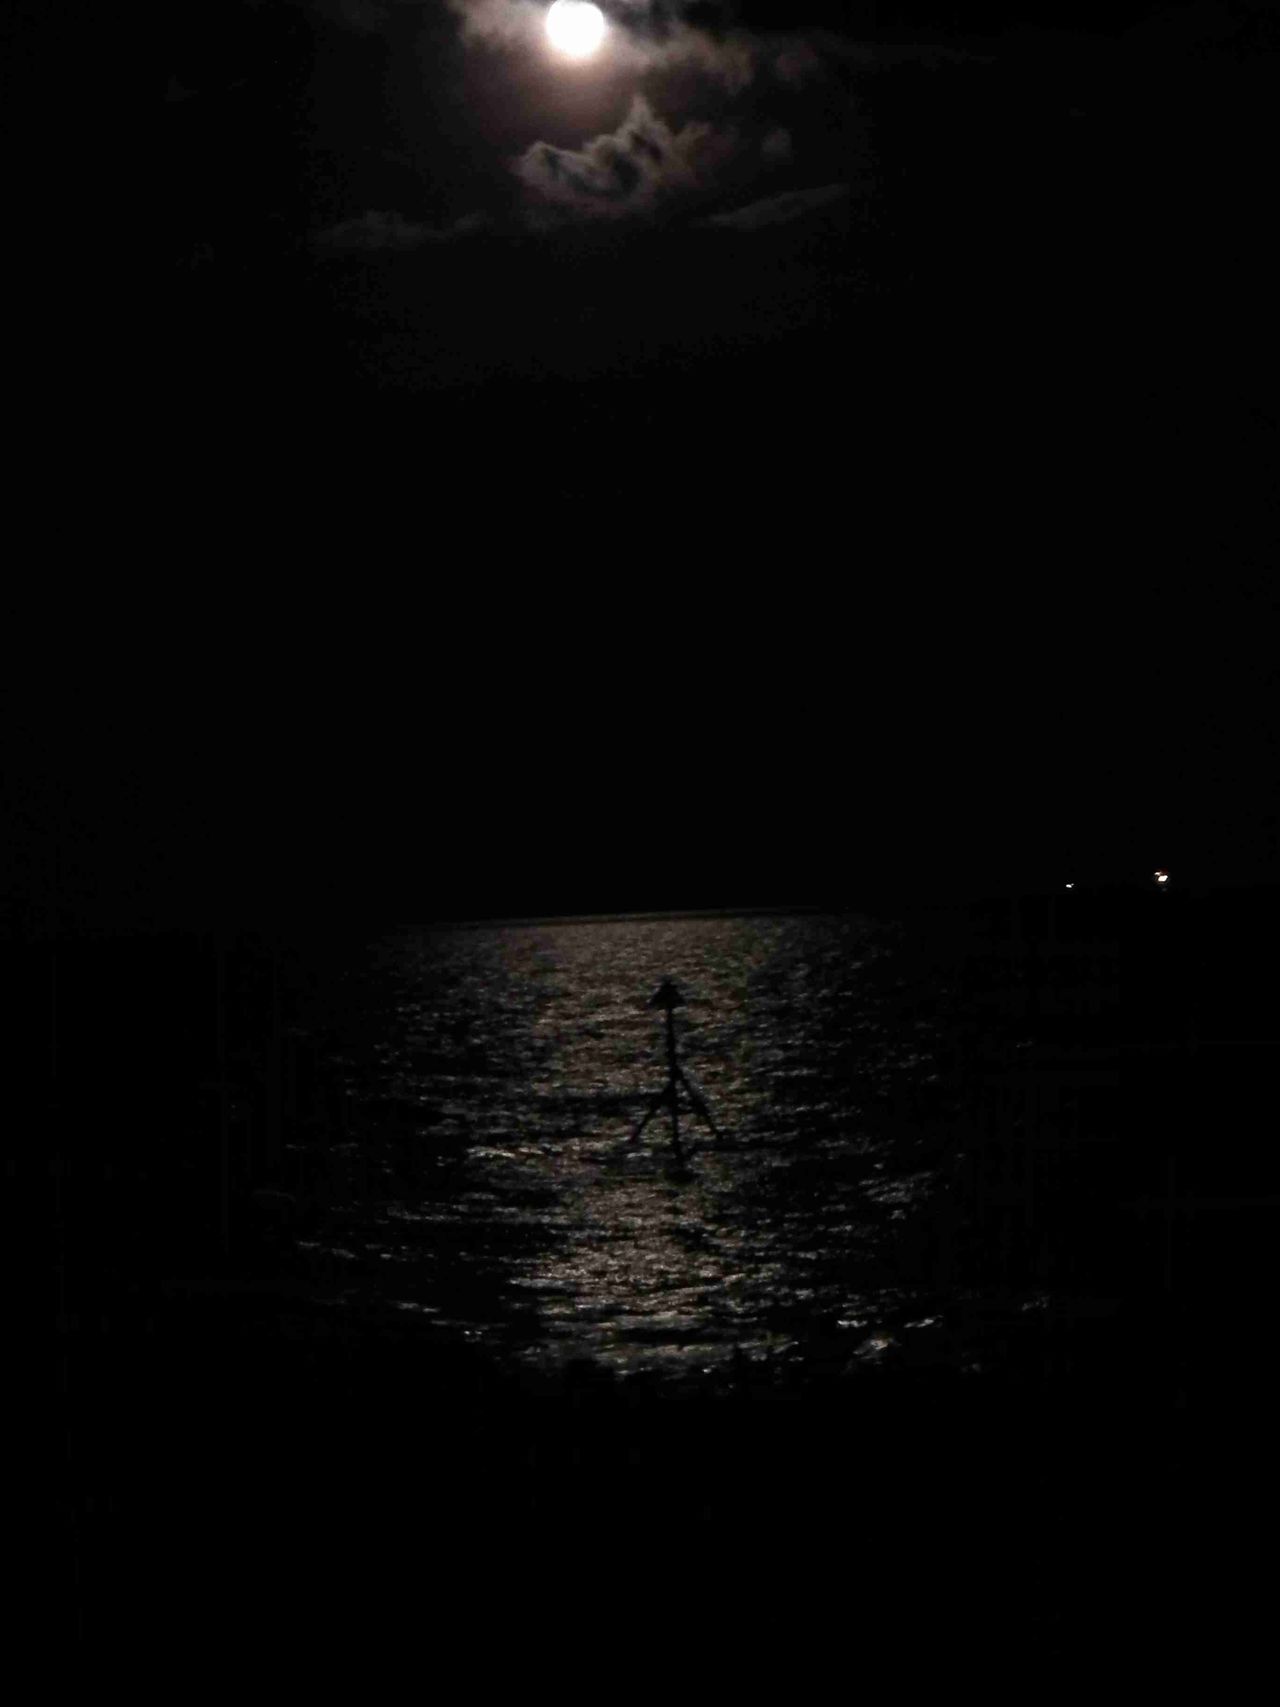 Moonlight on the Sea